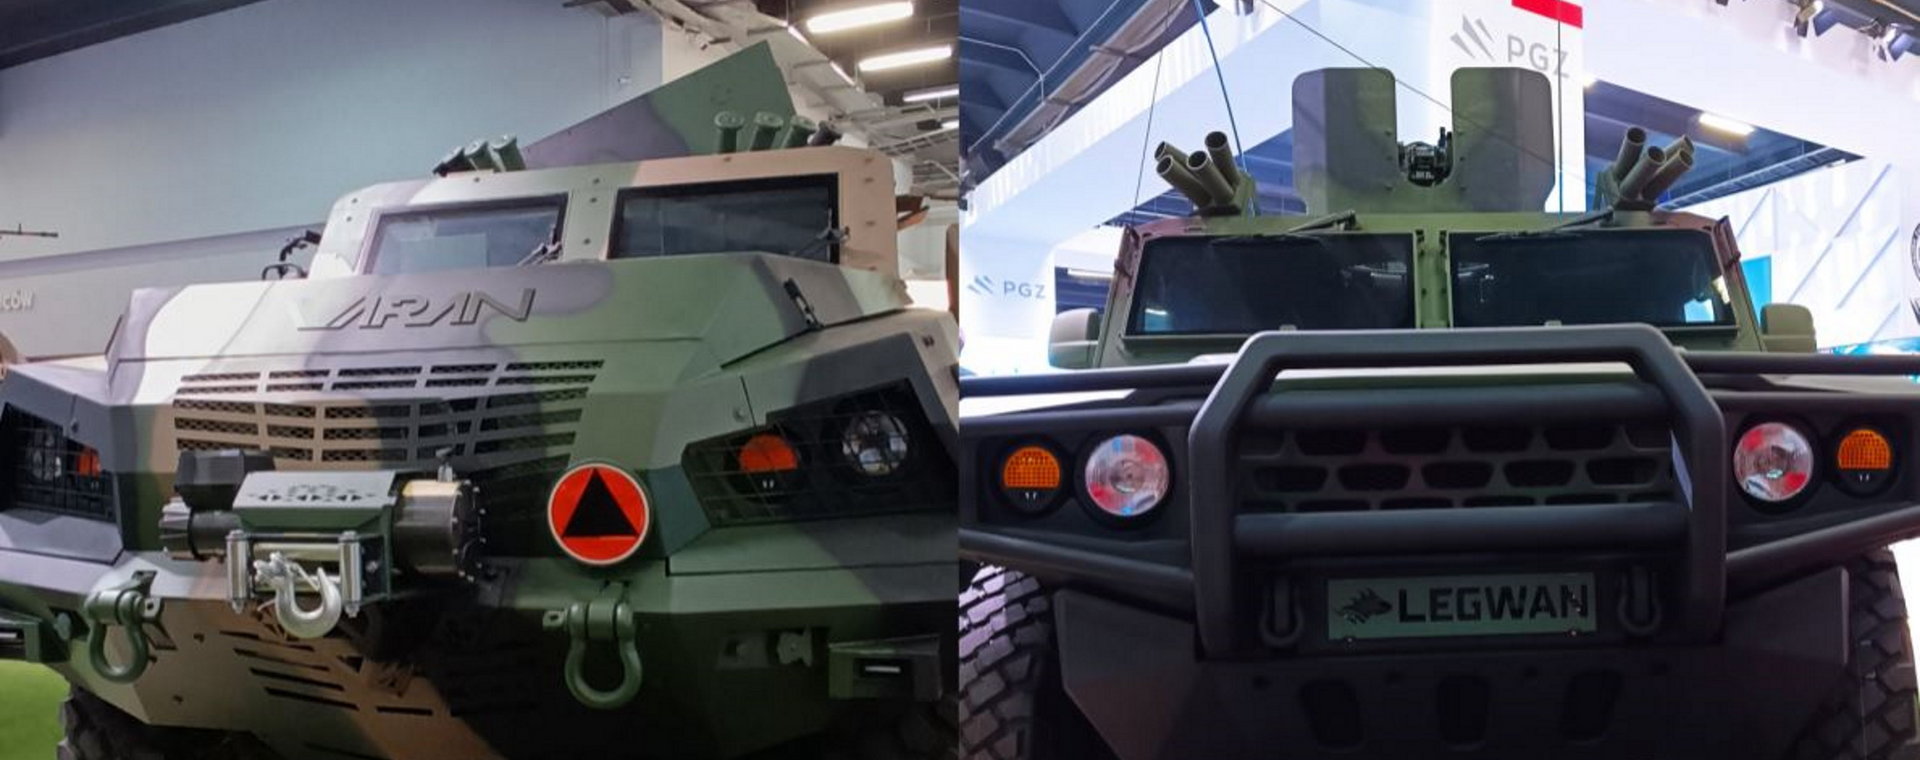 Waran i Legwan to dwa pojazdy, które mogą zadomowić się wkrótce w polskiej armii